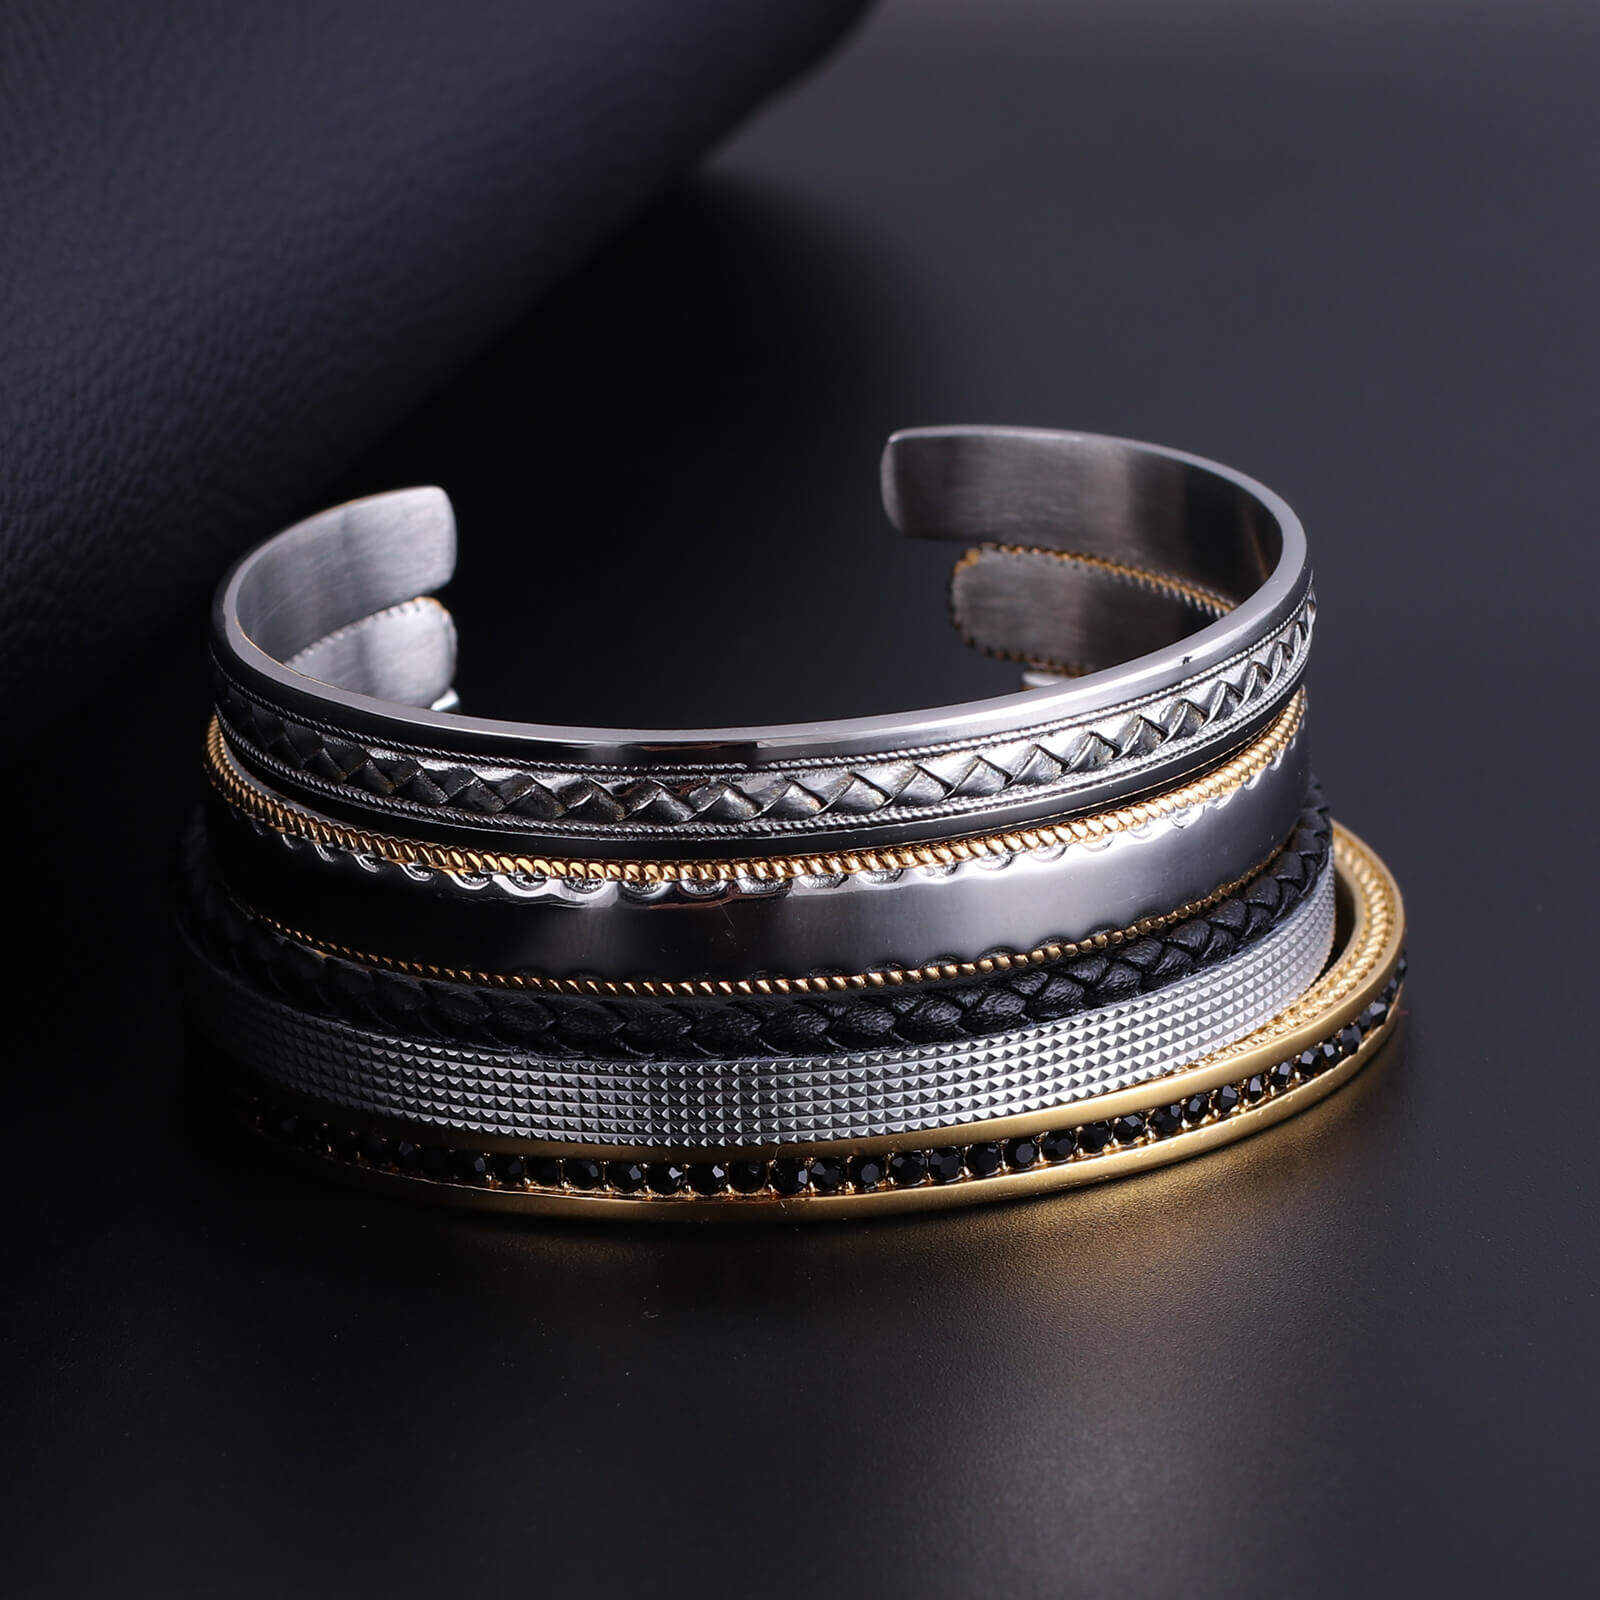 Wholesale easy leather bracelet,Custom mens leather bracelet set,soft leather bracelet Sales,14k stainless steel bracelet,buy leather bracelet